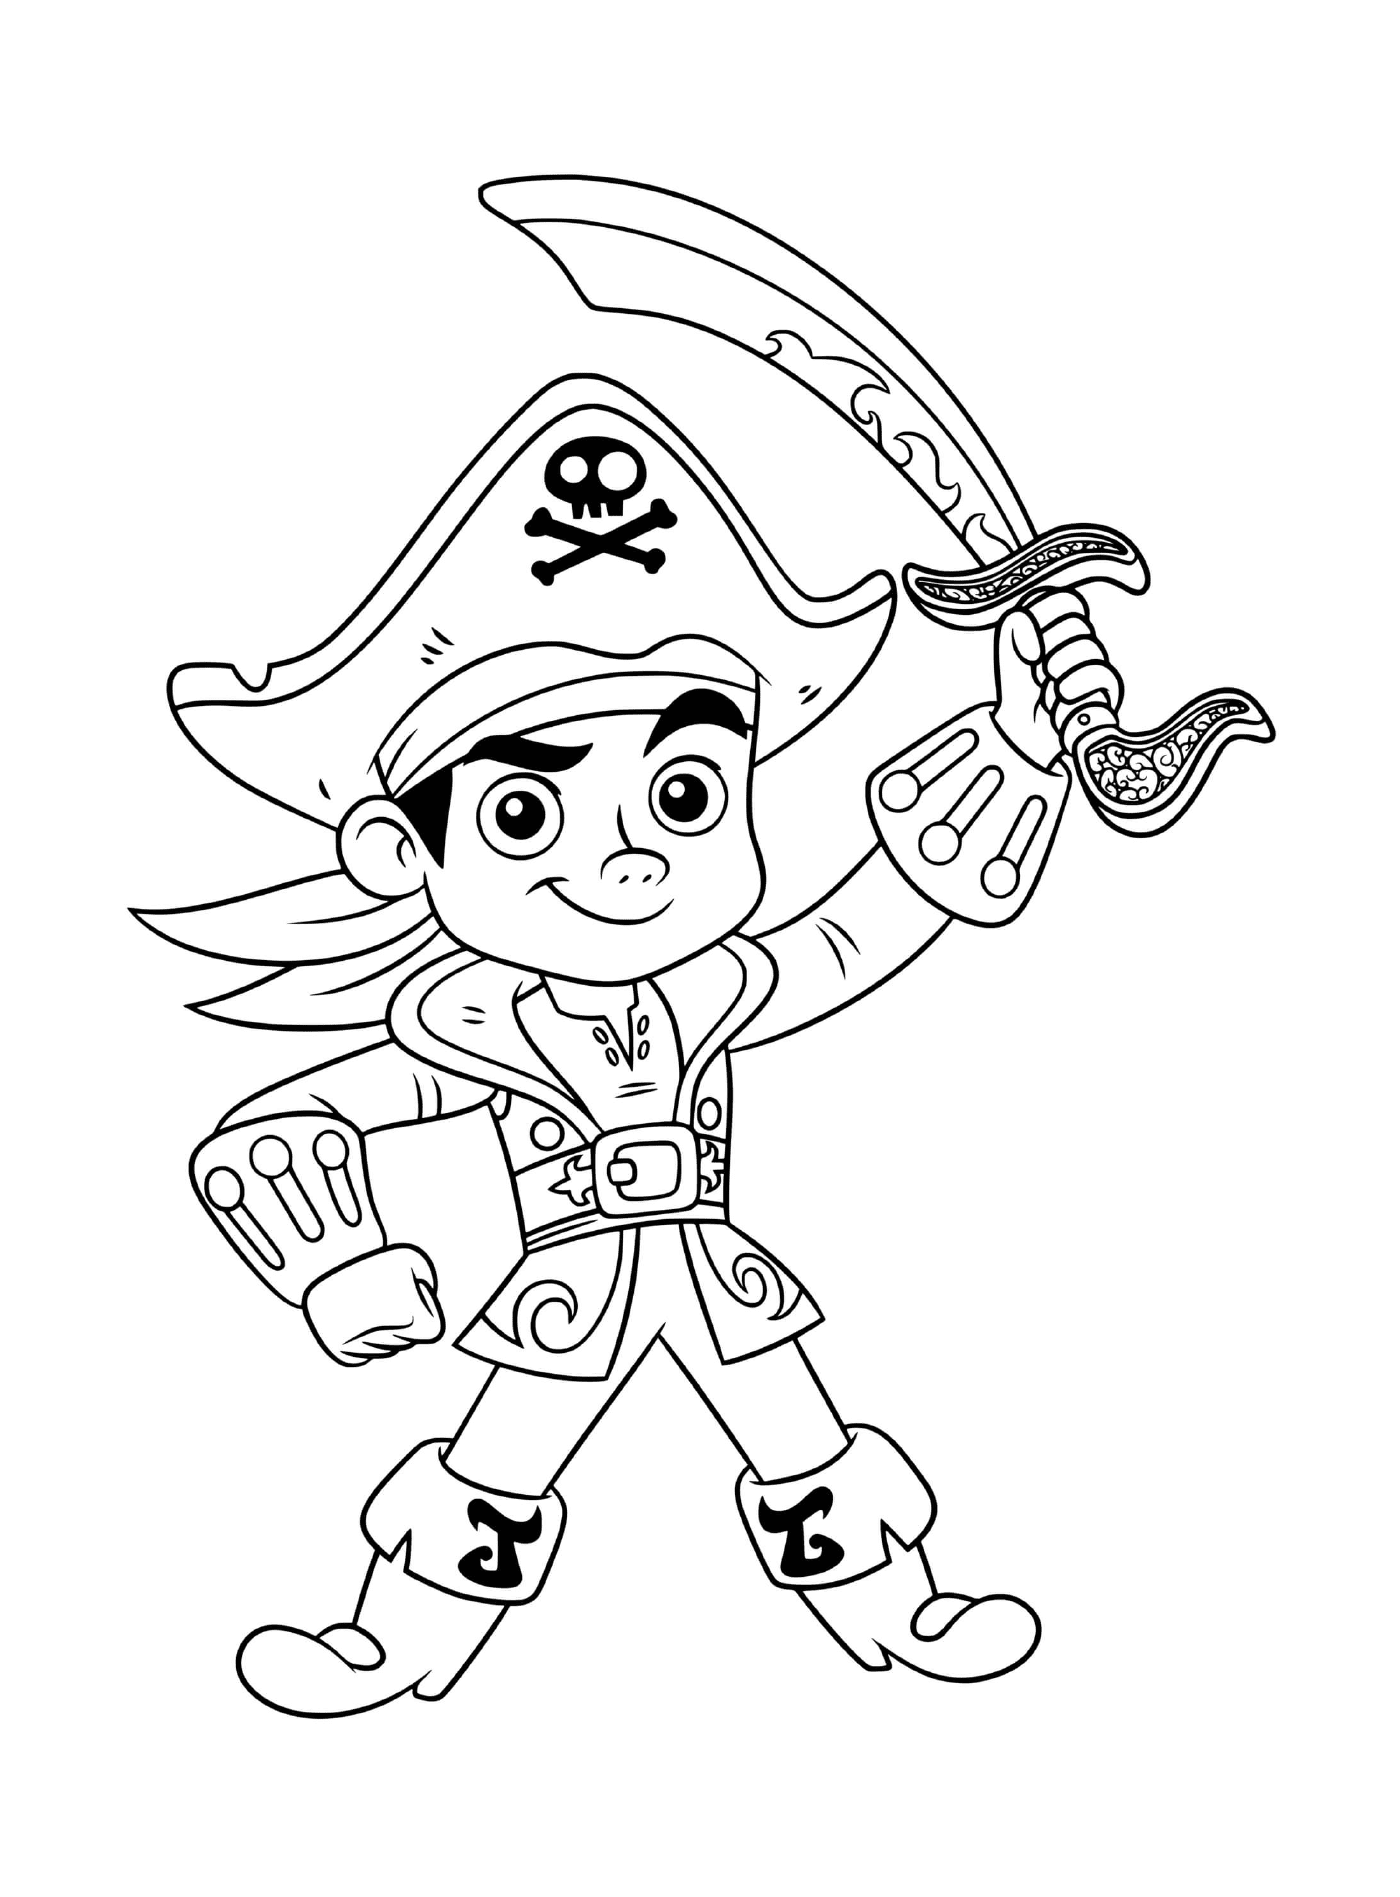  समुद्री डाकू लड़का जैक बहादुर 